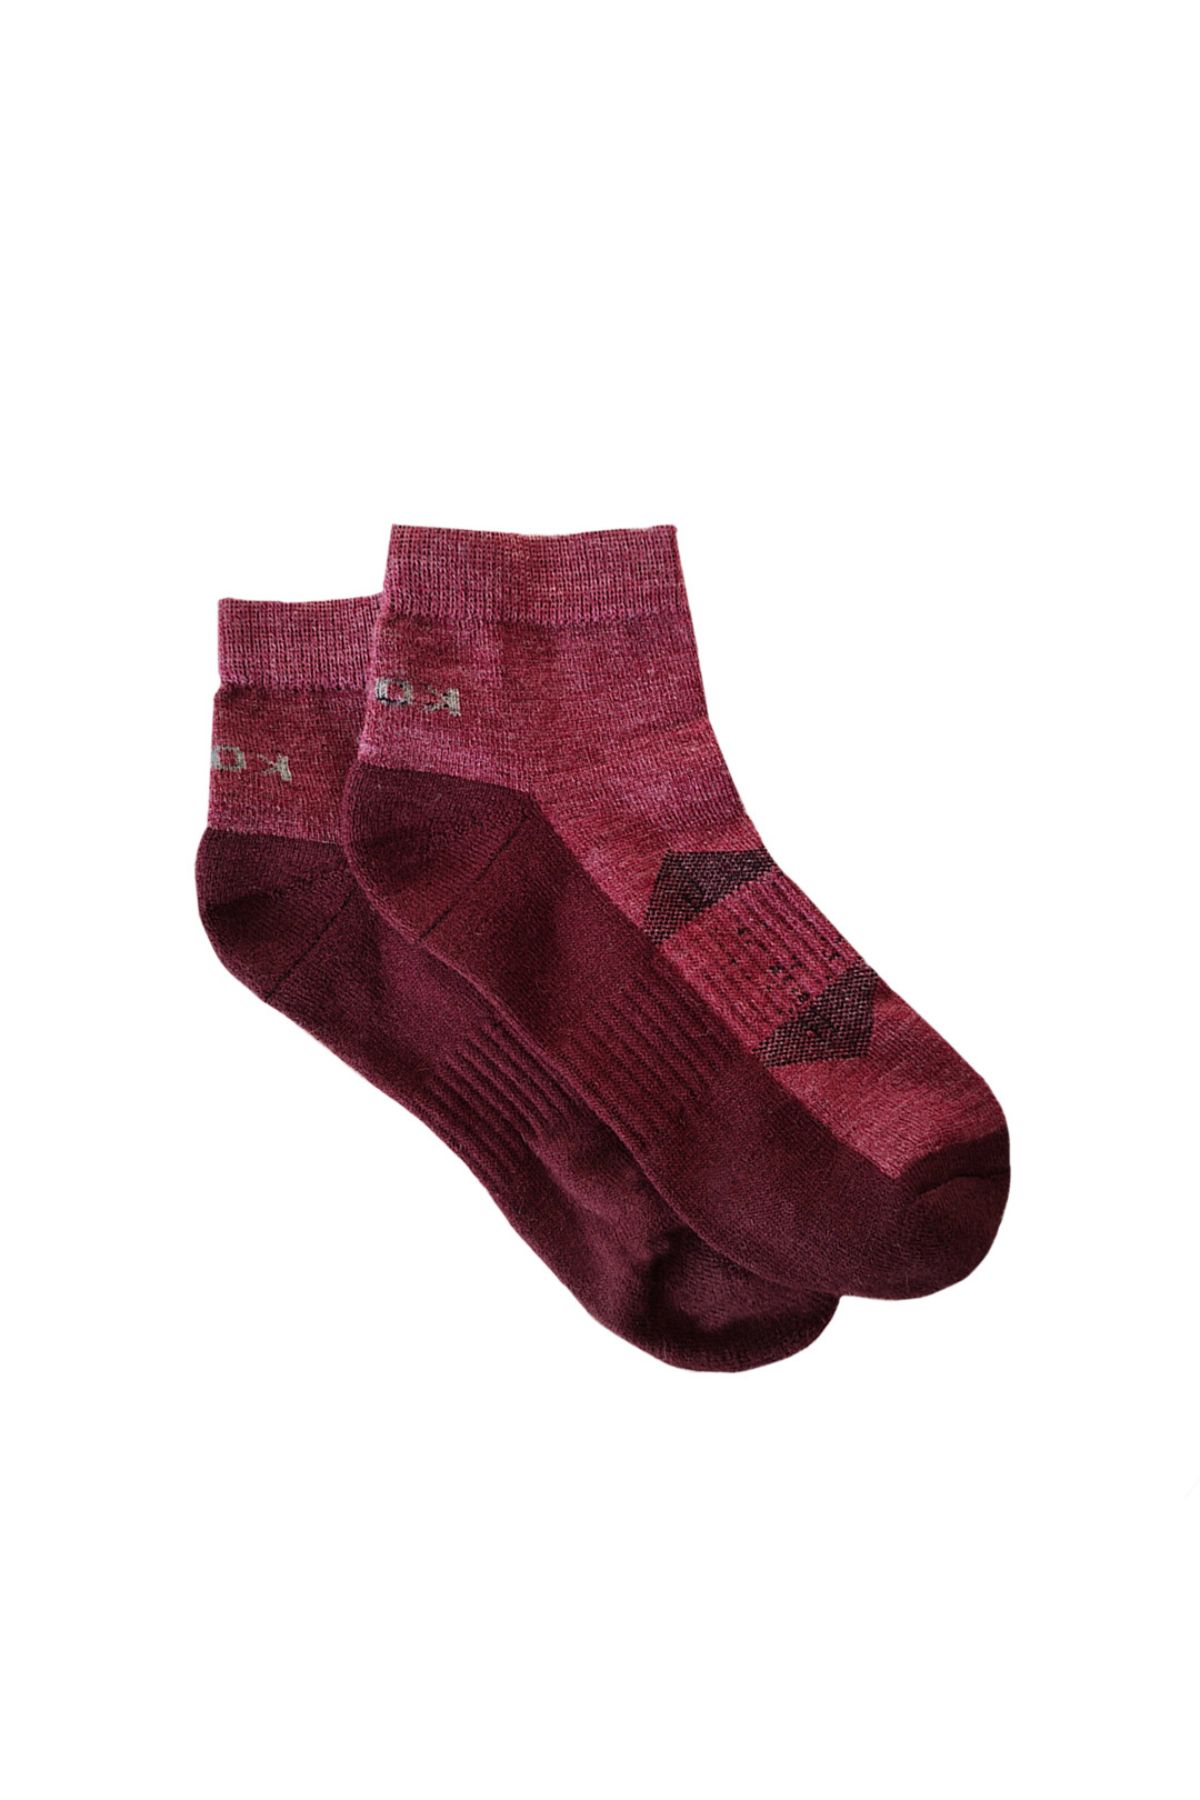 Namik No Blister Merino Wool Red Maroon Ankle Socks | Women